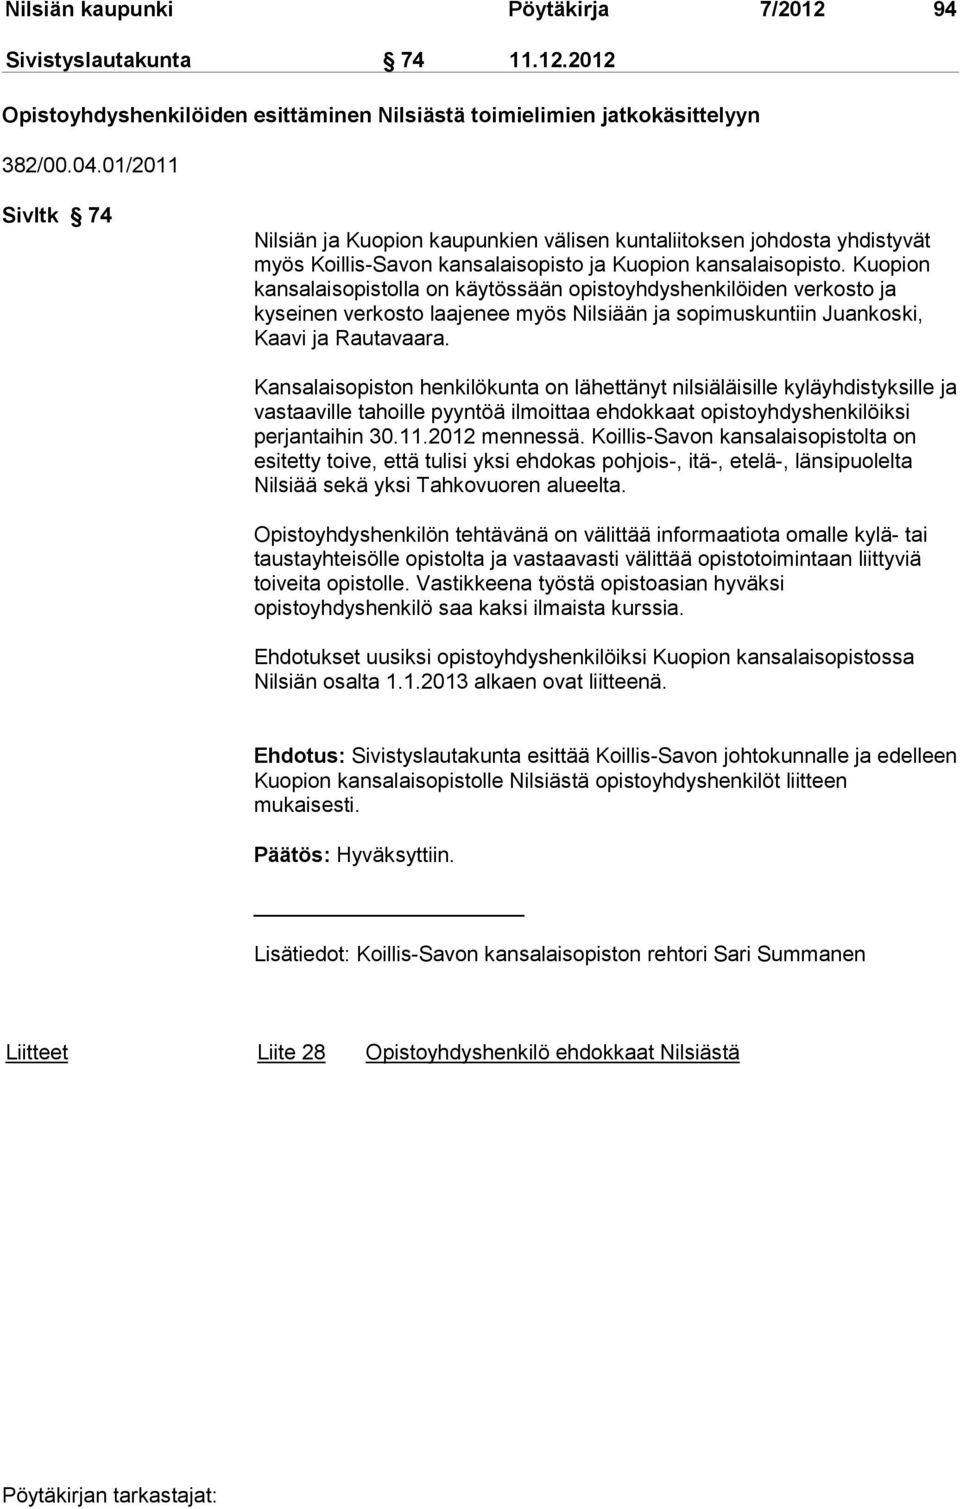 Kuopion kansalaisopistolla on käytössään opistoyhdyshenkilöiden verkosto ja kyseinen verkosto laajenee myös Nilsiään ja sopimuskuntiin Juankoski, Kaavi ja Rautavaara.